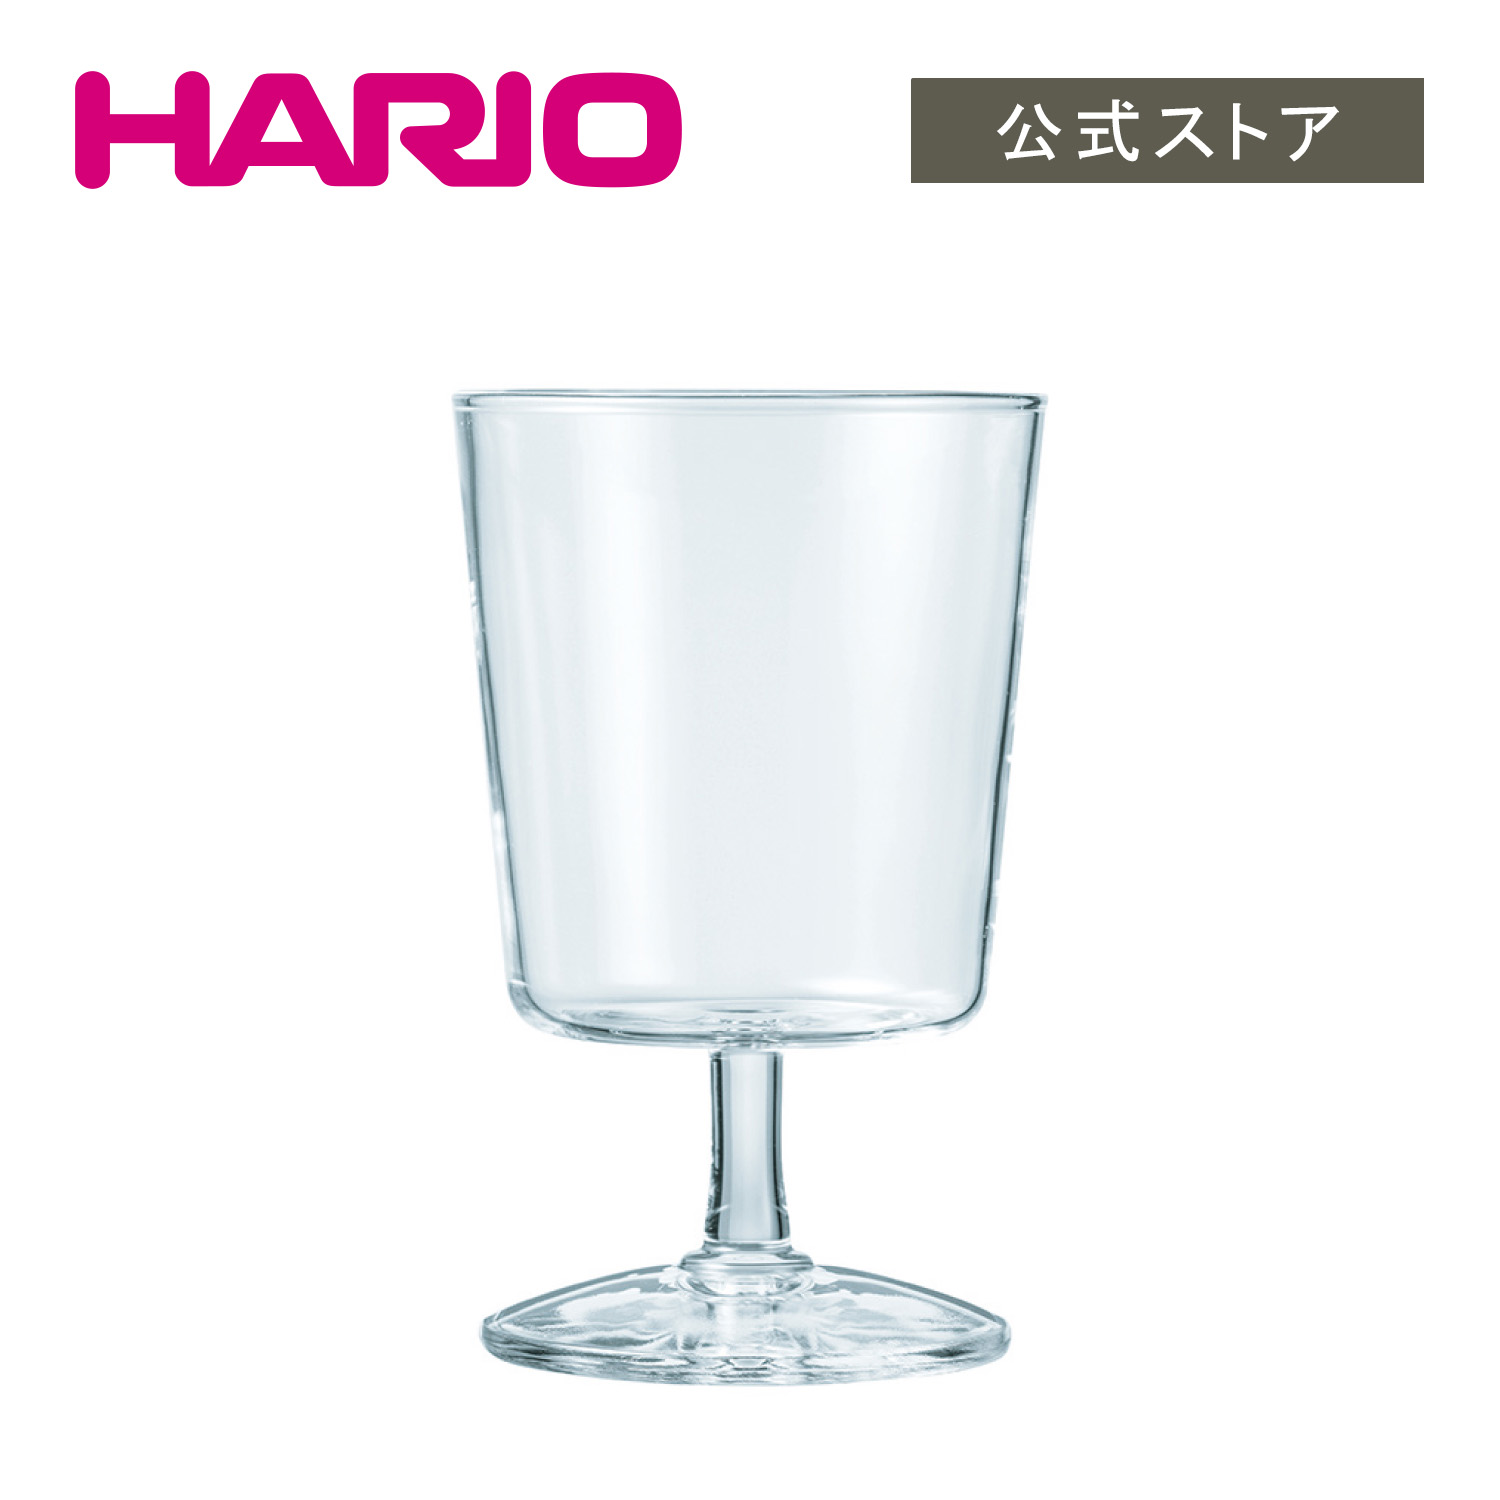 HARIO Glass Goblet　HARIO ハリオ 公式 グラス 耐熱ガラス おしゃれ かわいい ステム